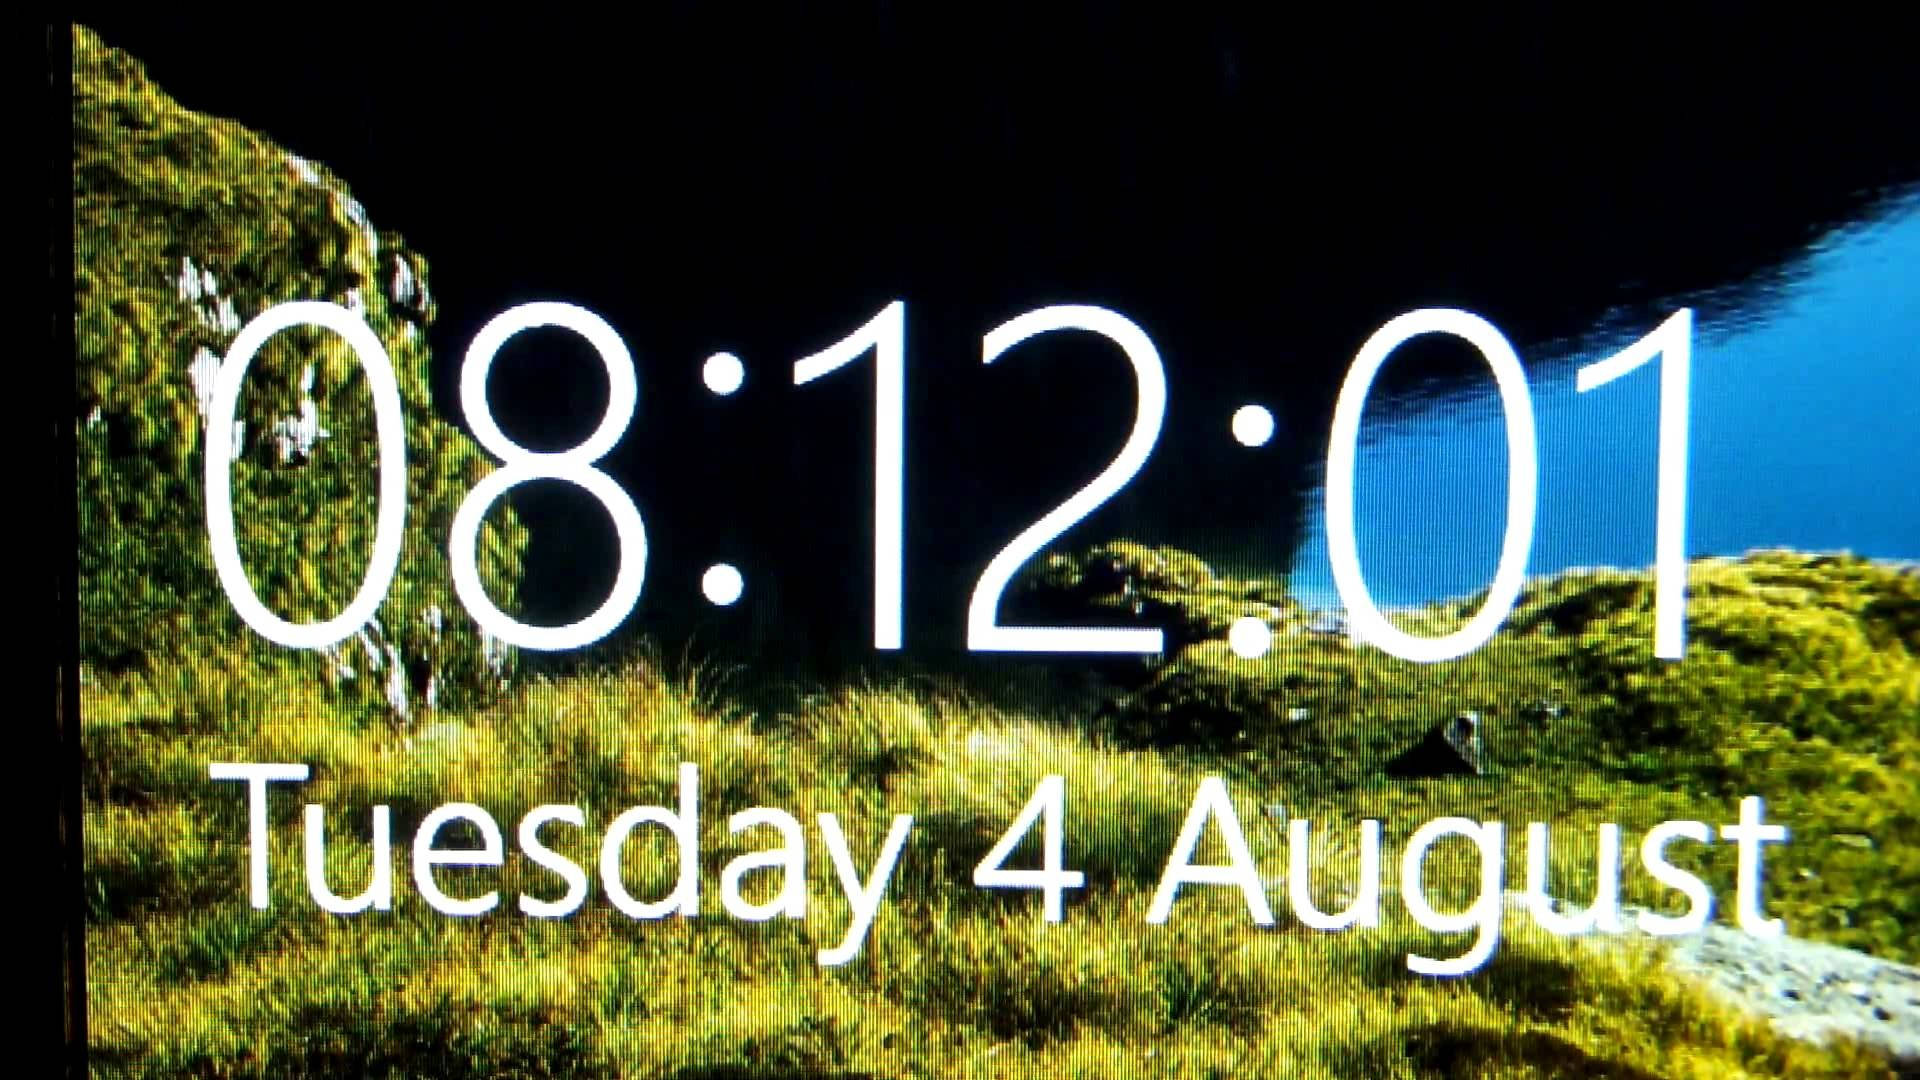 Windows Lock Screen Clock And Calendar Picture